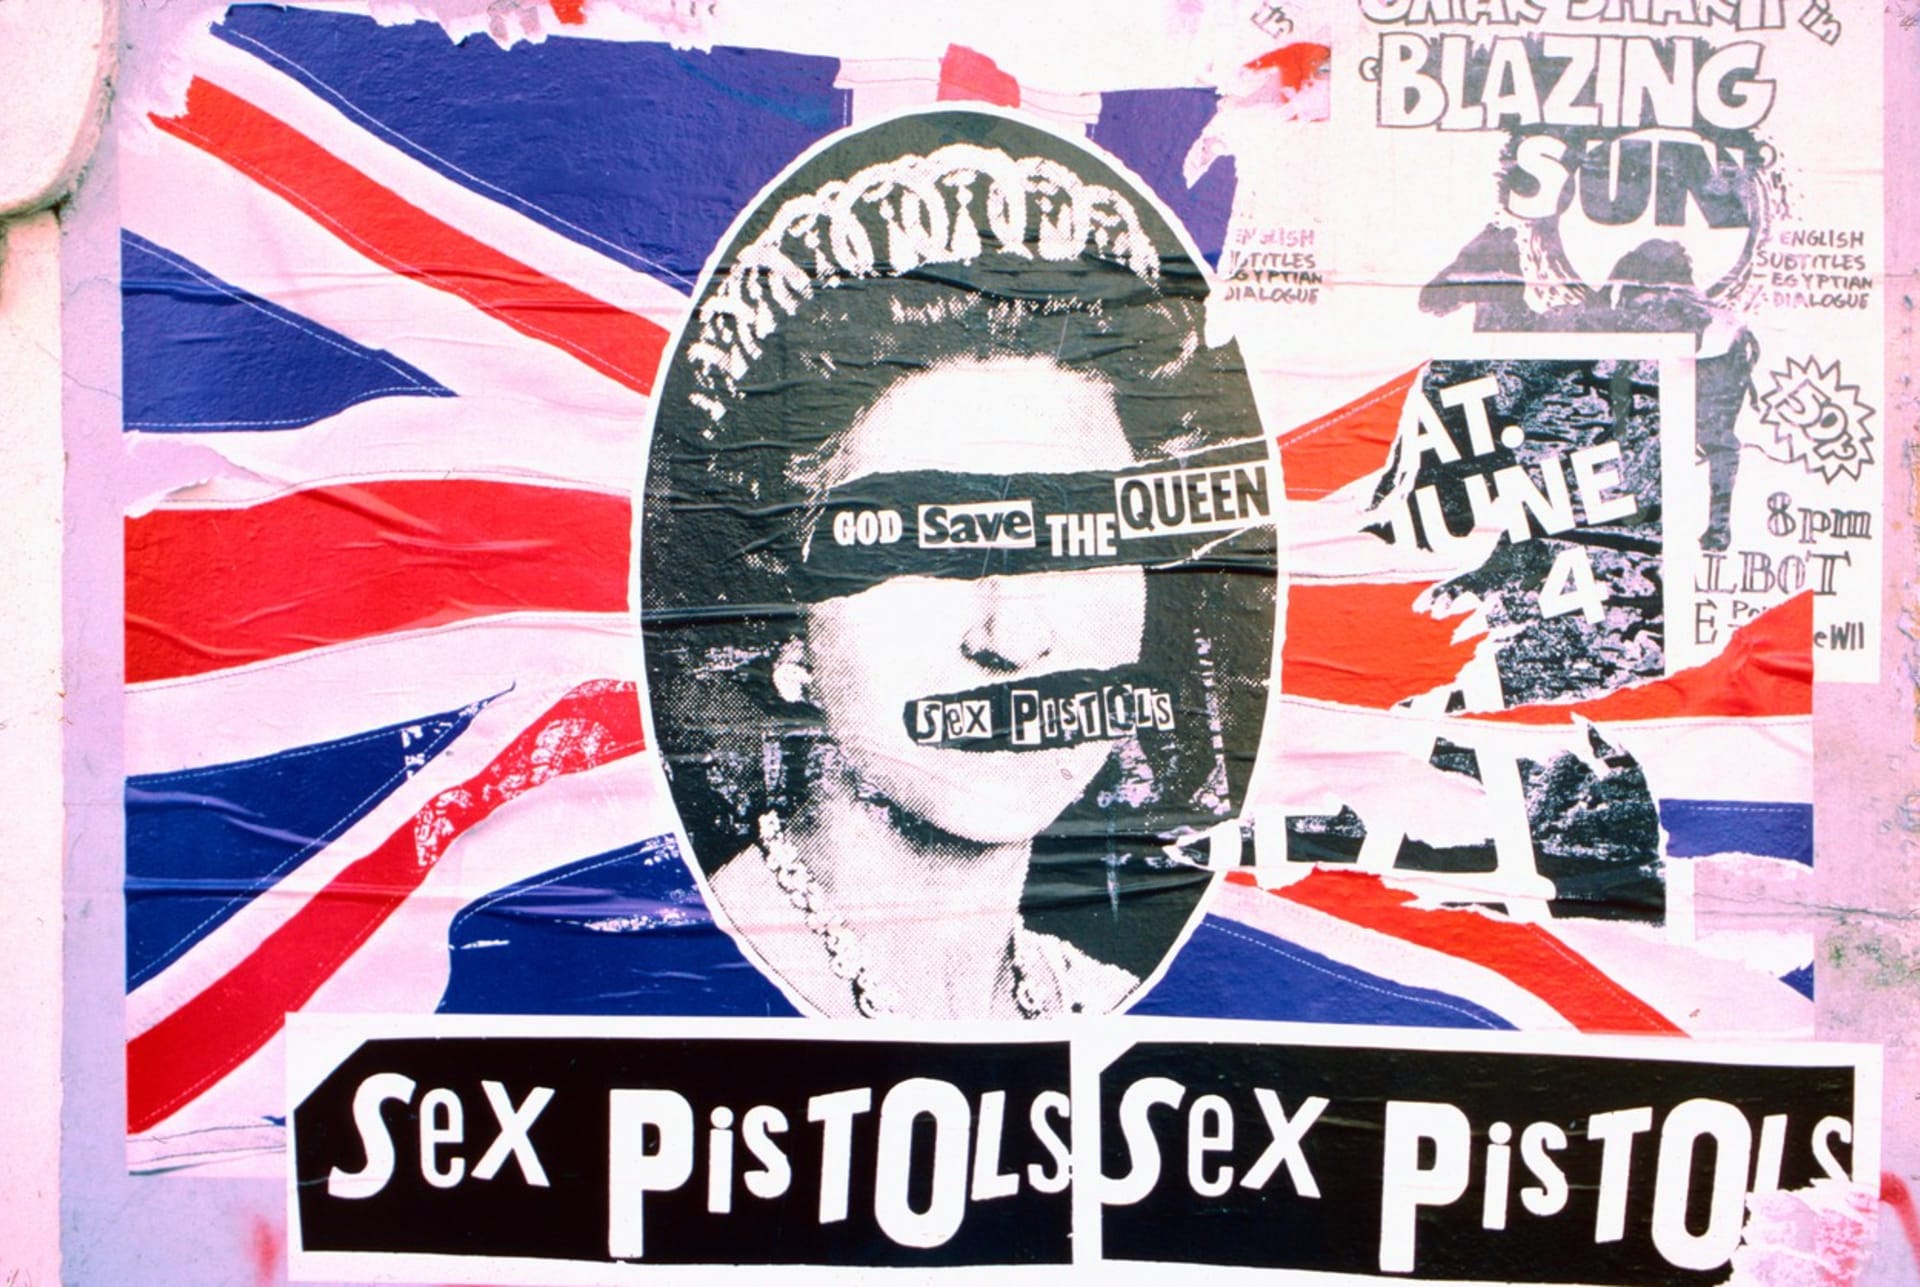 Sex Pistols a jejich singl God Save the Queen symbolizoval vzpouru podstatné části britské společnosti proti vývoje v zemi, vymezoval se i proti královně.